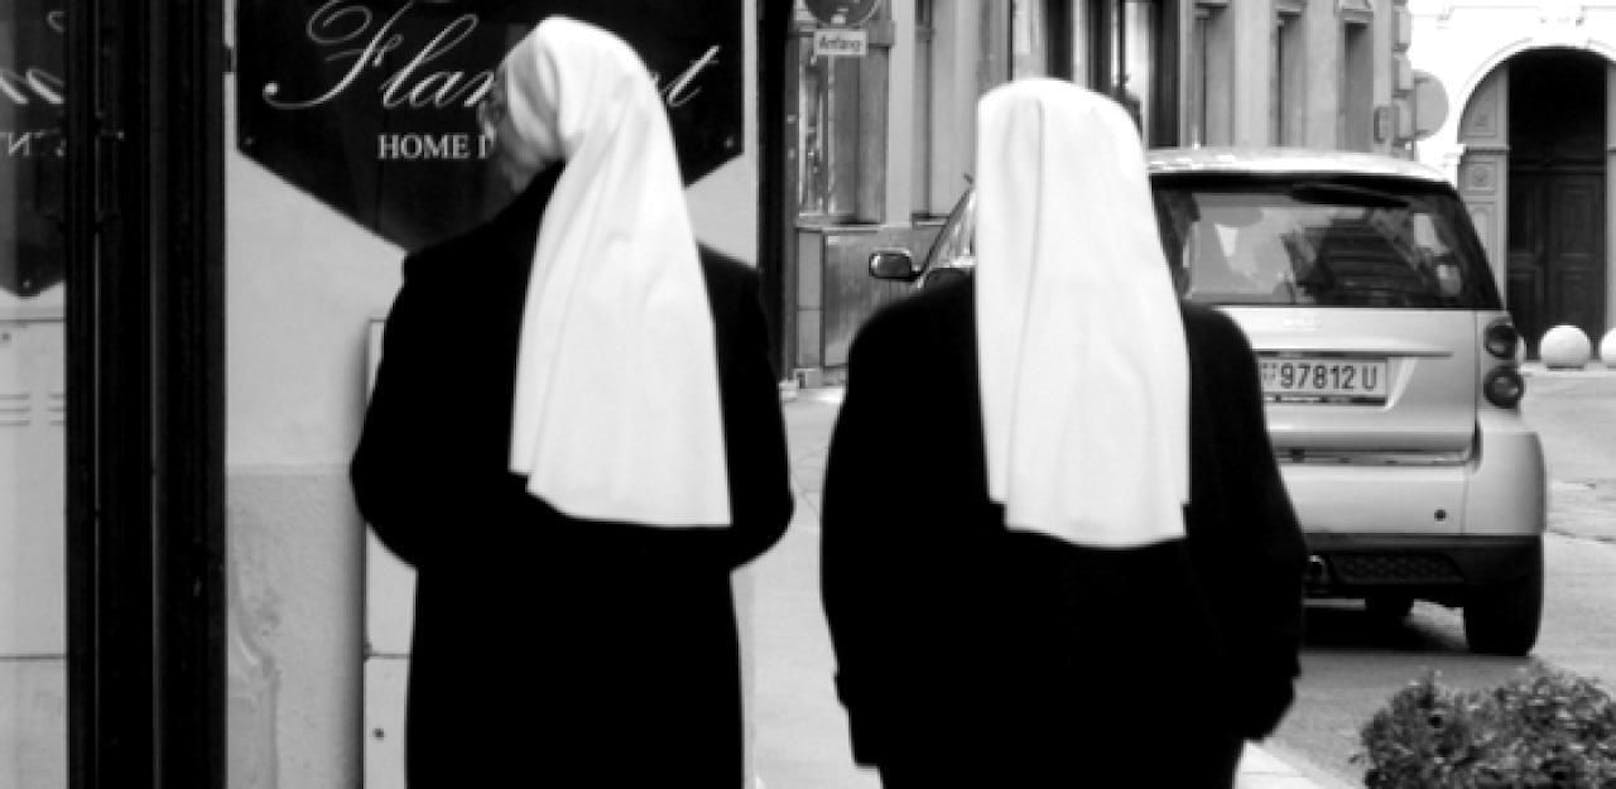 Zwei Nonnen hatten während ihrer Missionsreisen sexuellen Kontakt und wurden geschwängert. (Symboldbild)